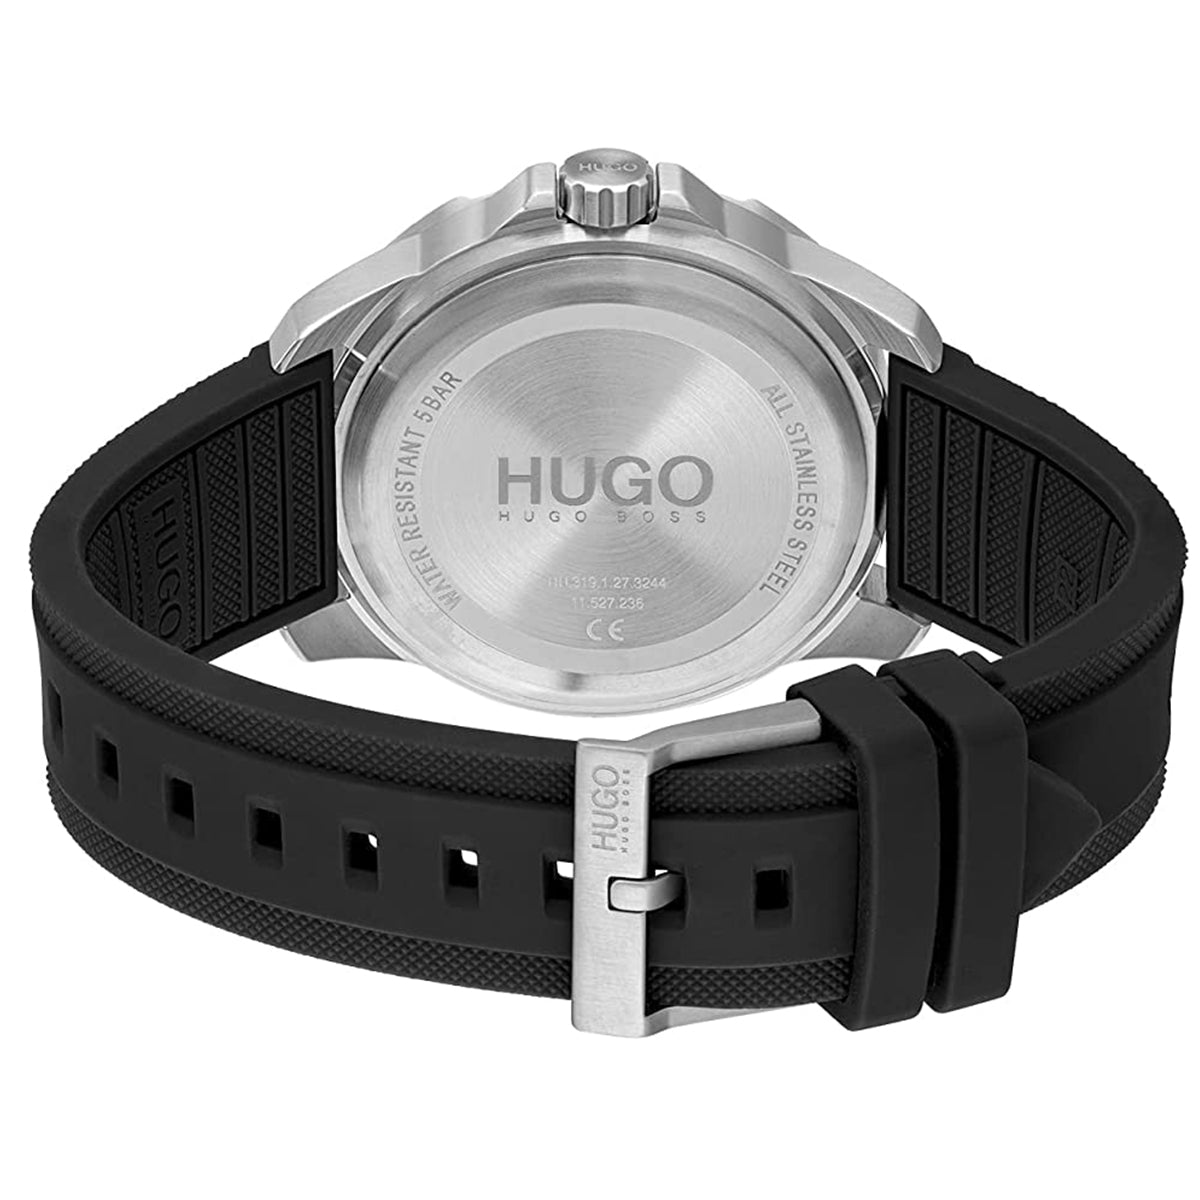 Hugo Boss - Street diver - HB153.0222